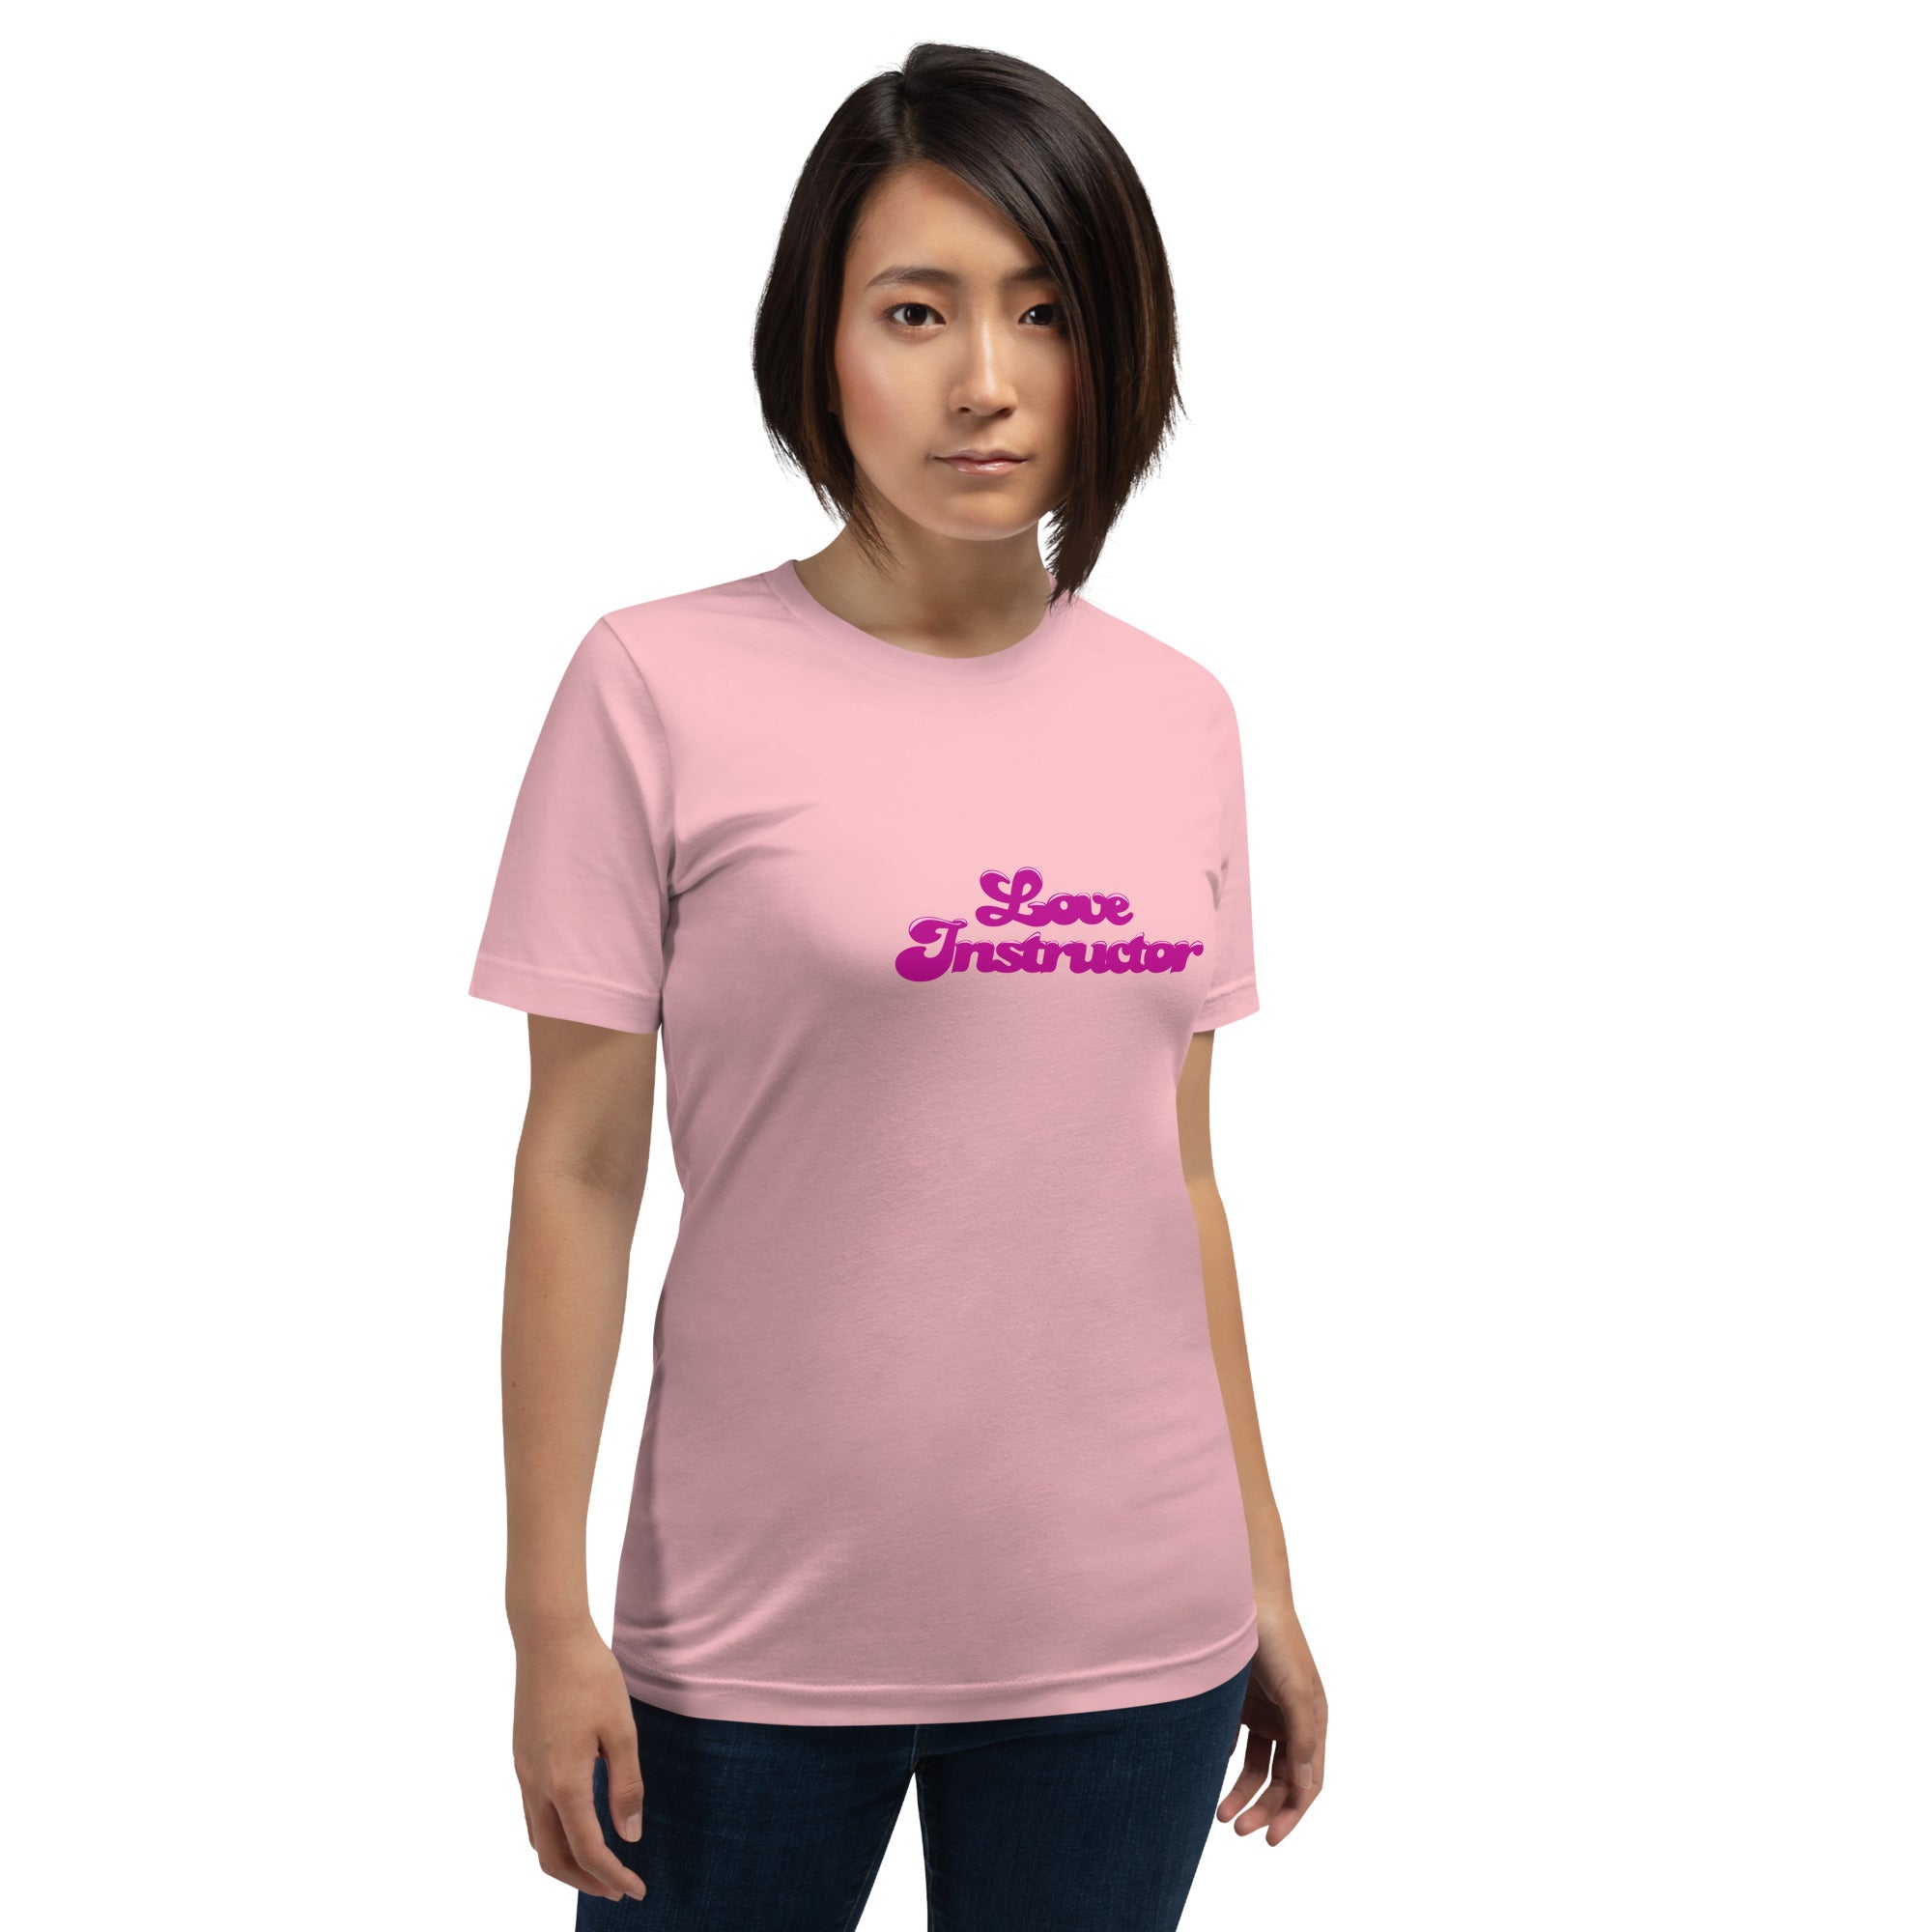 T-shirt en coton unisexe Love instructor sur couleurs claires